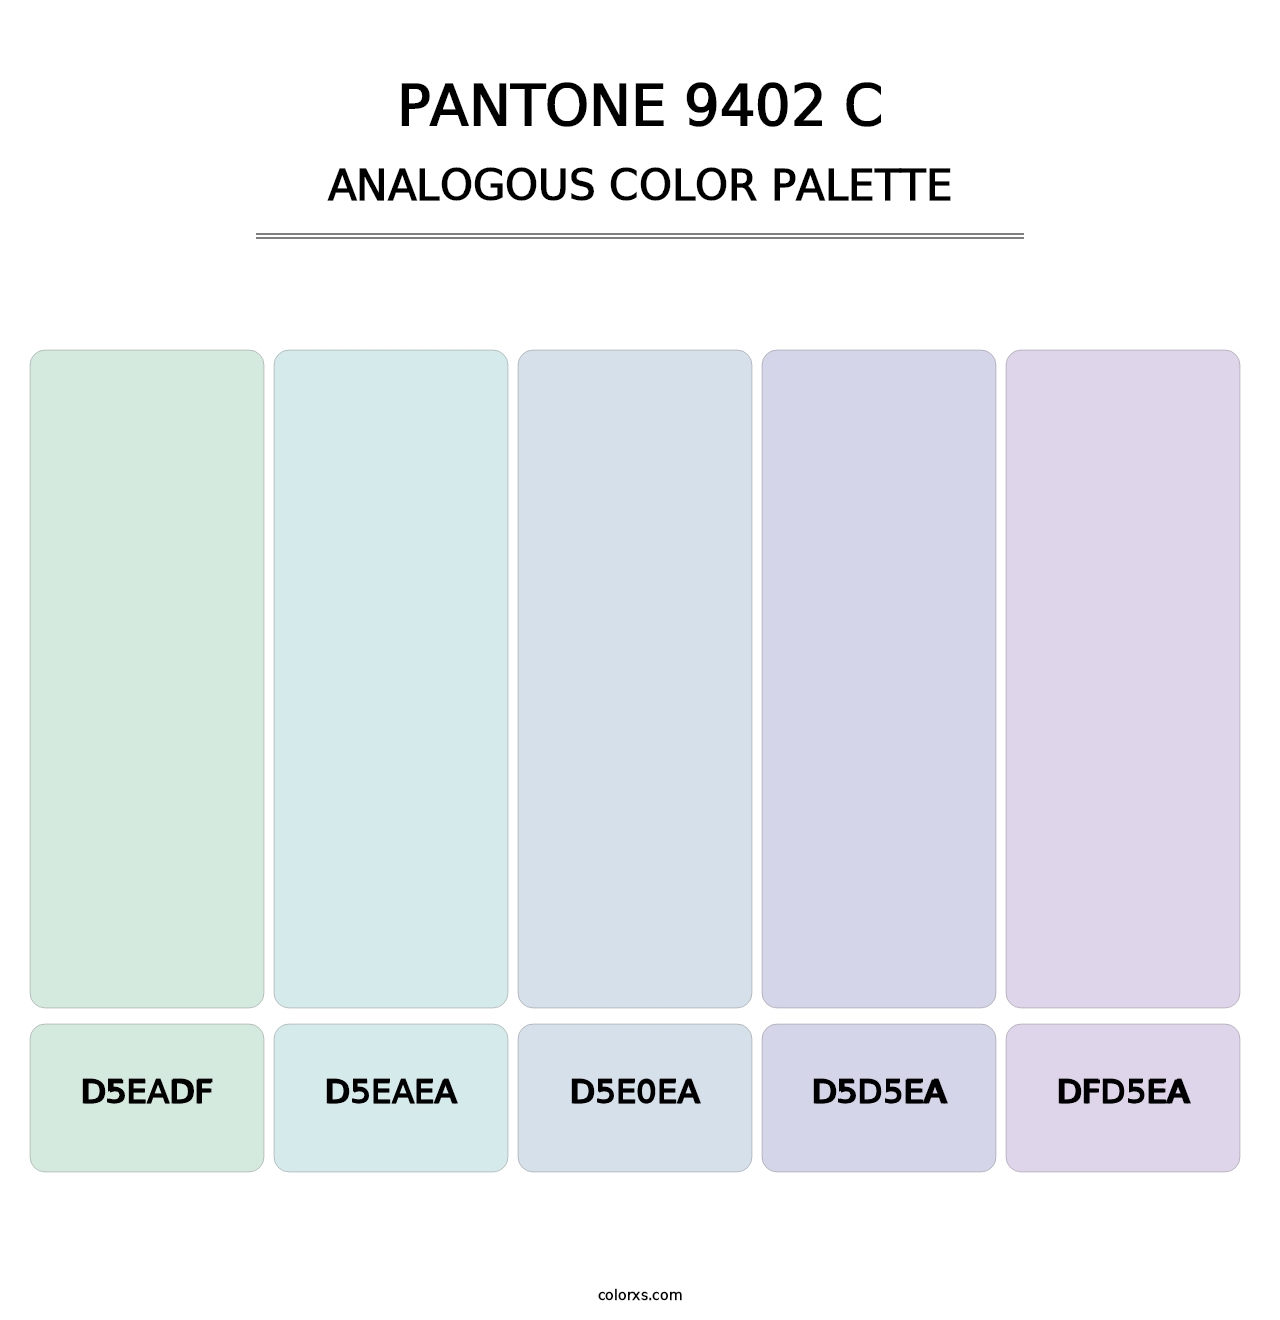 PANTONE 9402 C - Analogous Color Palette